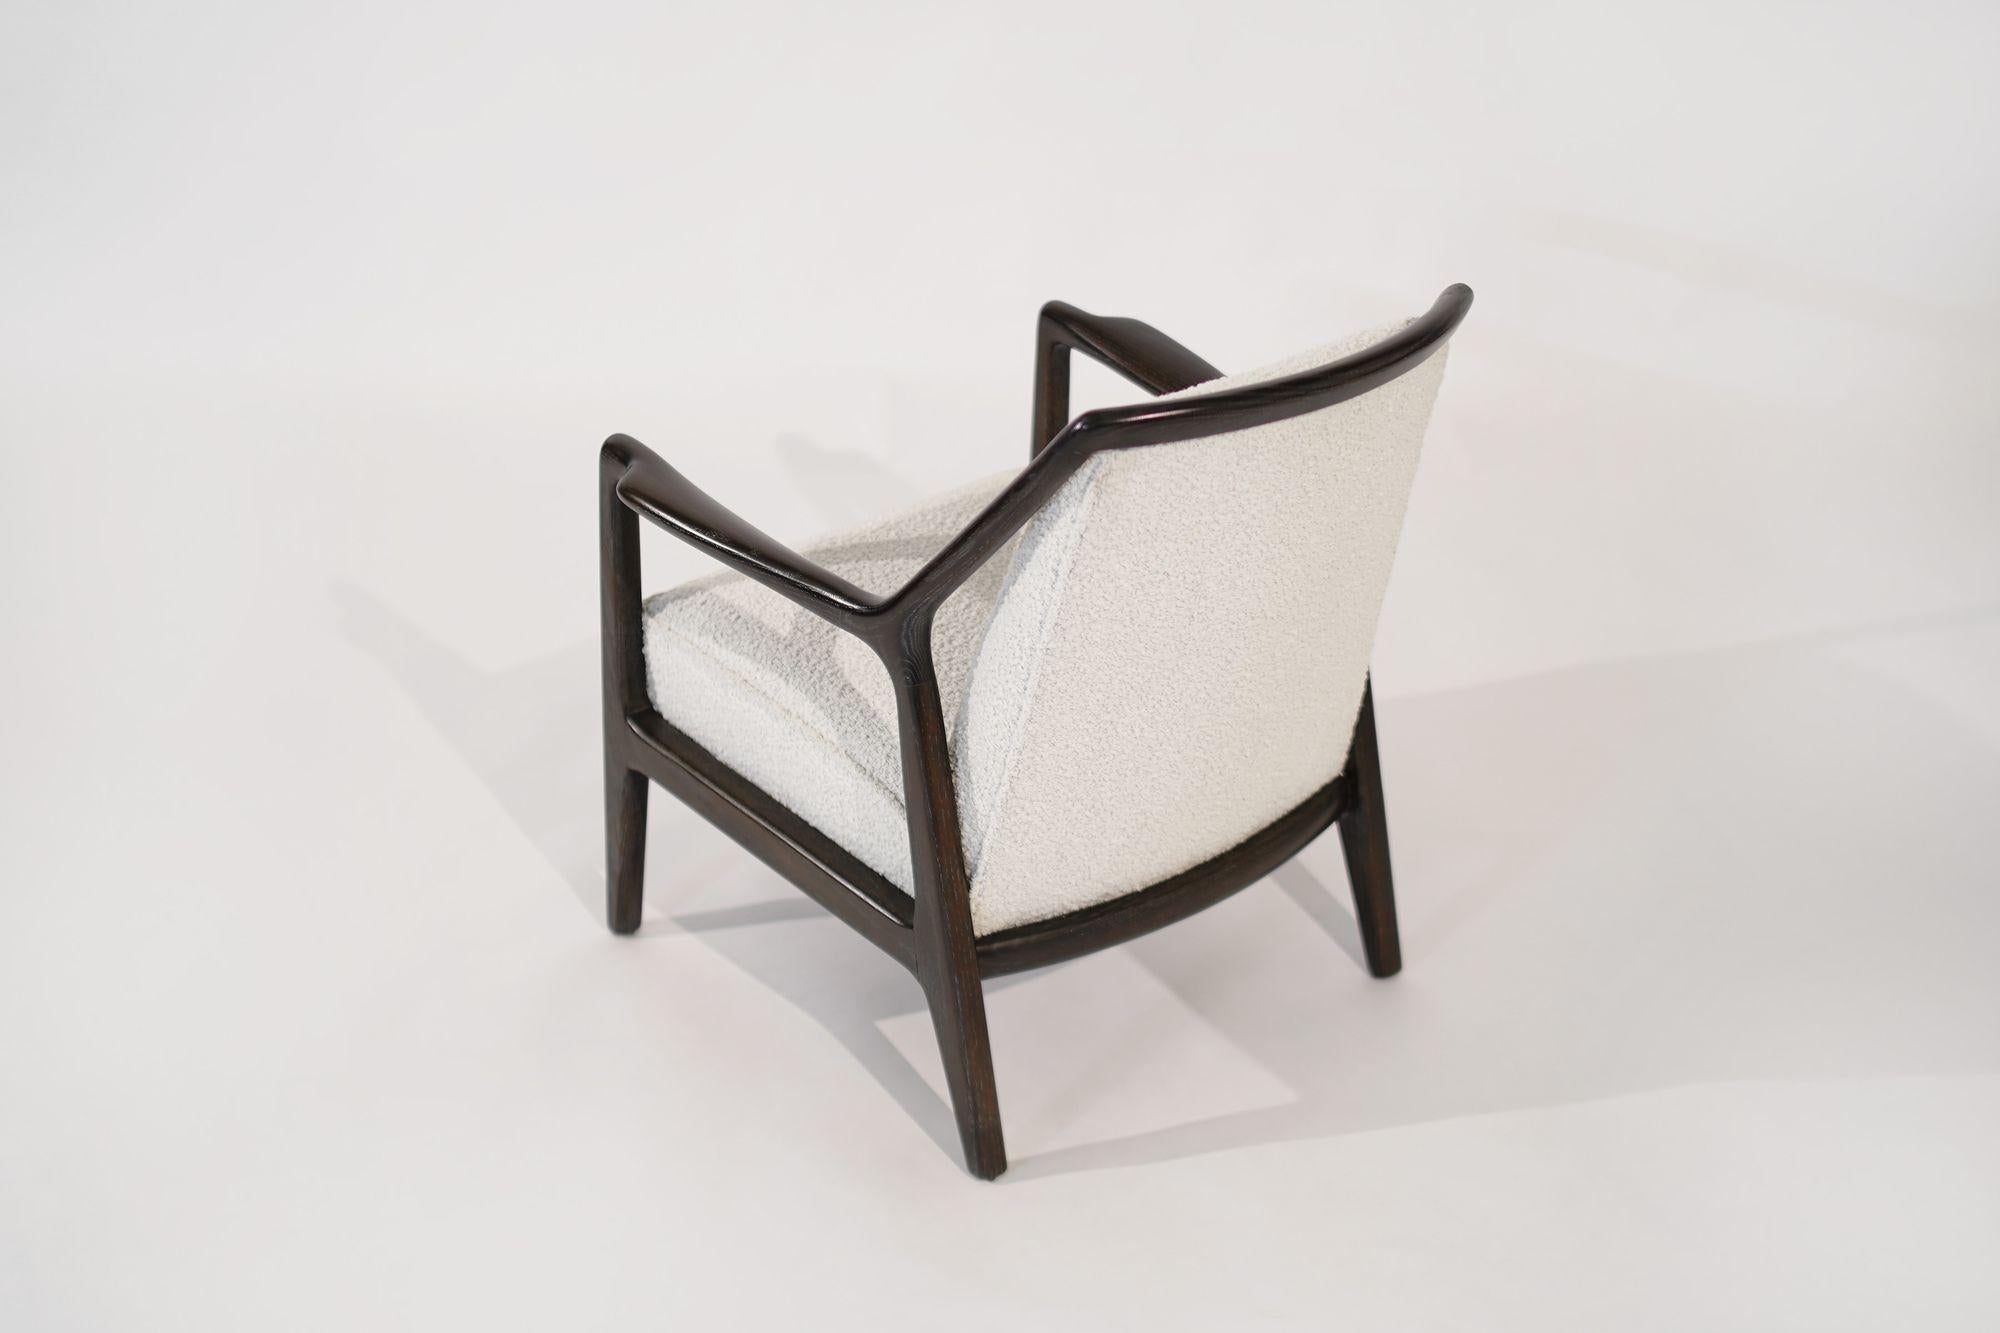 20th Century Lounge Chair in Limed Oak by Jack Van Der Molen, C. 1950s For Sale